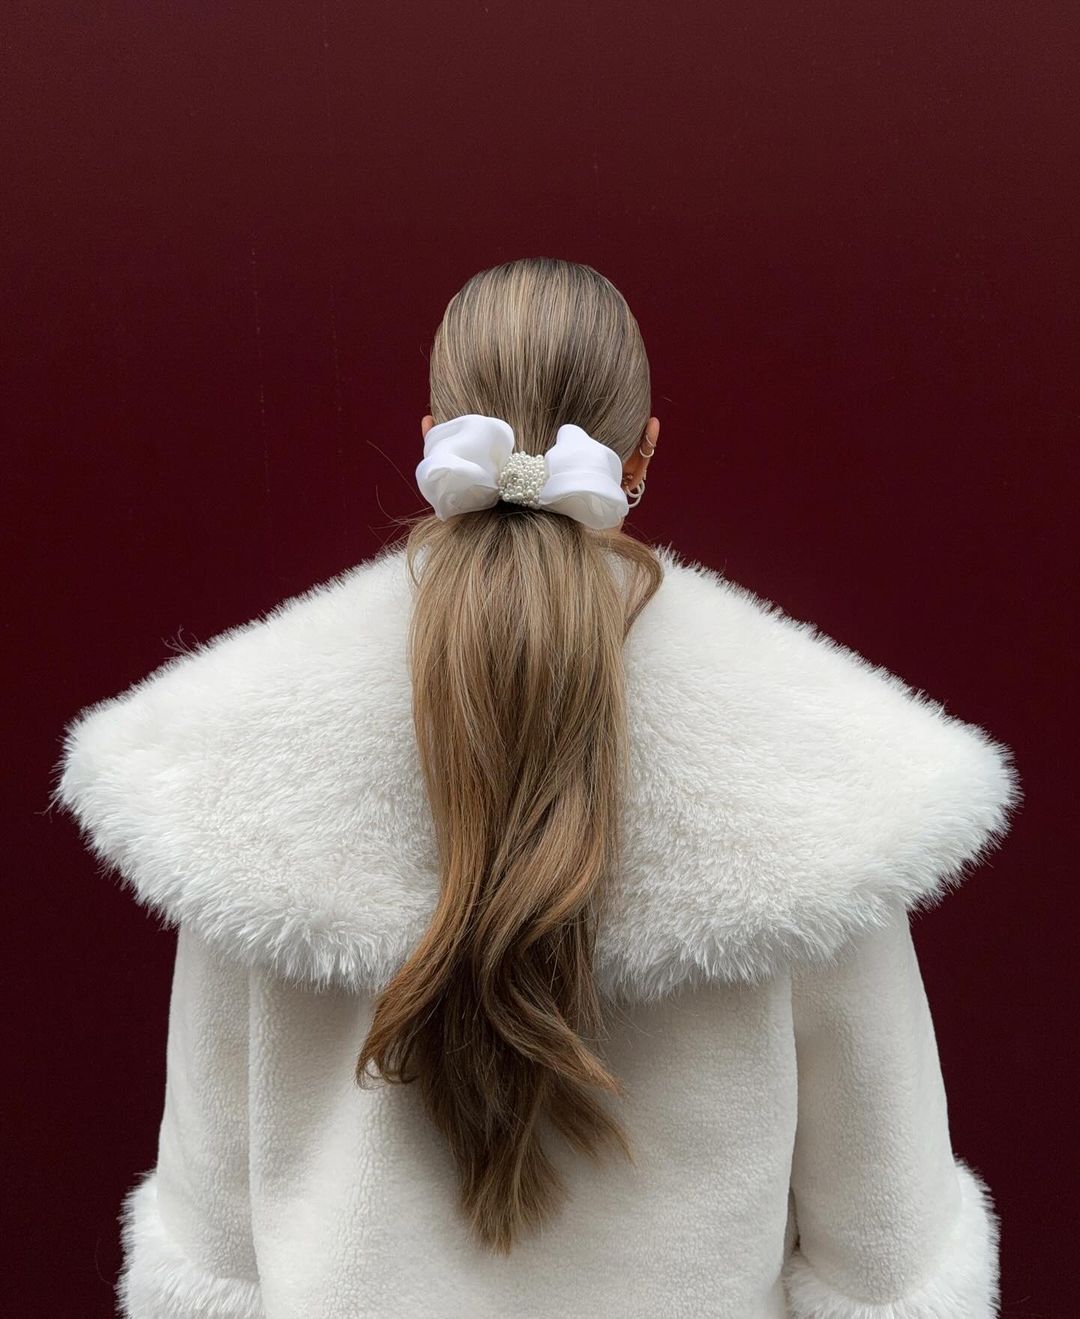 Polina Ilieva'dan Hanna Stefansson'a Haftanın Güzellik Instagram'ları